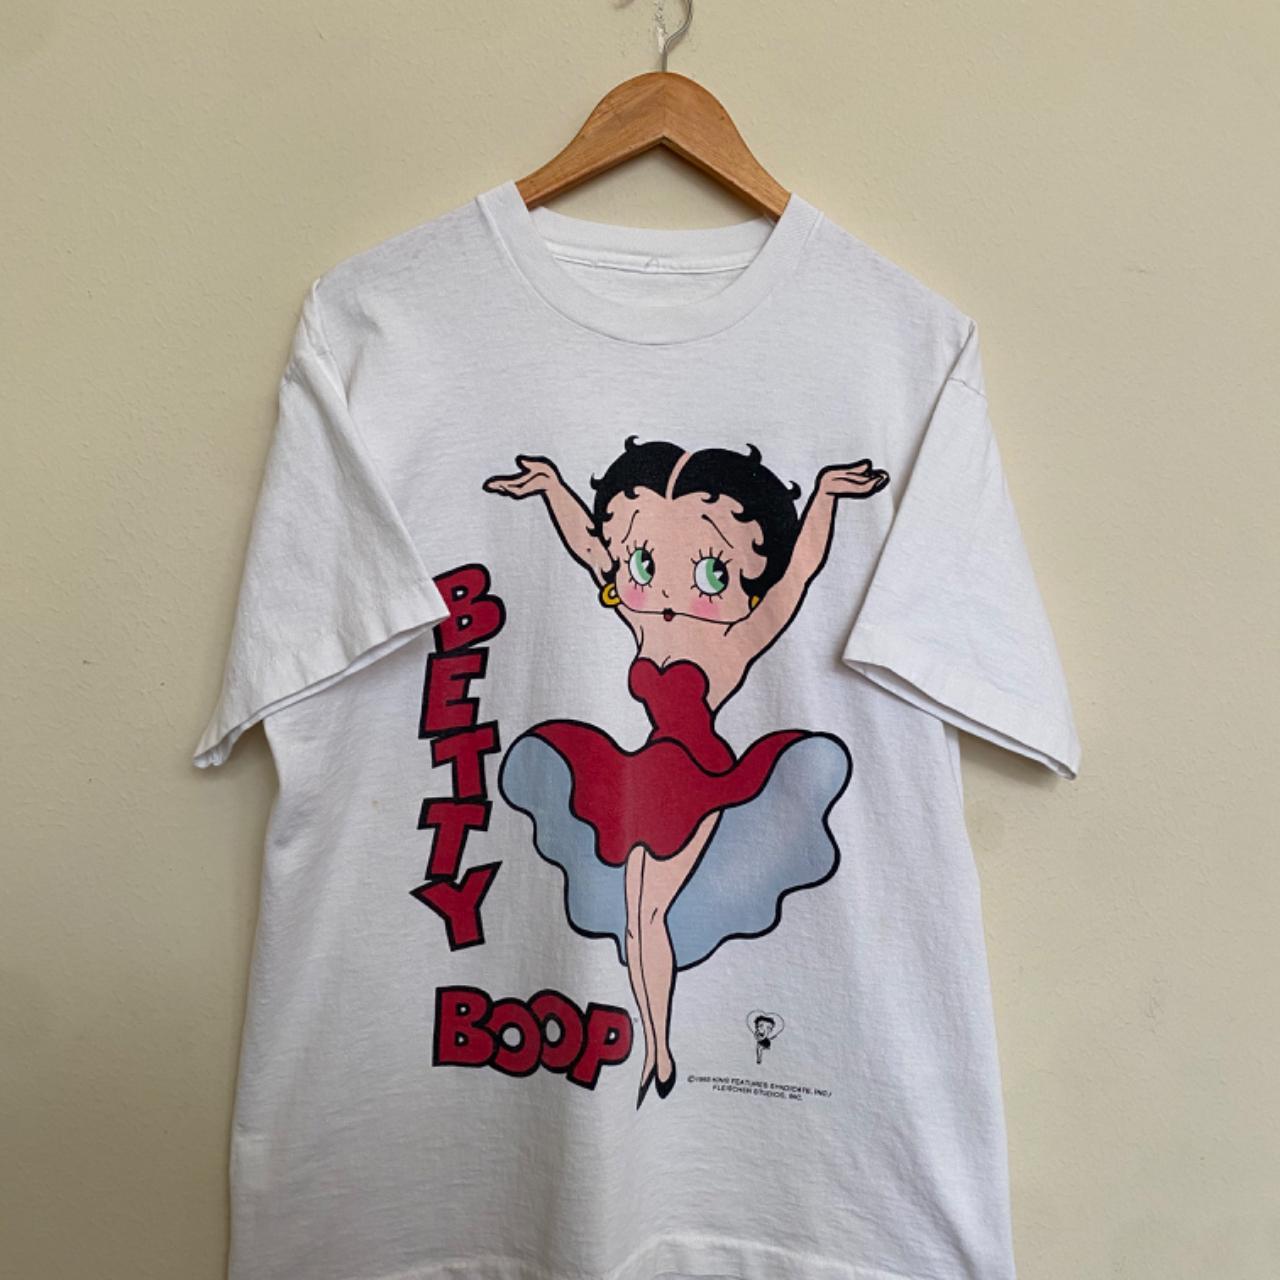 Vintage 1993 Betty Boop T-Shirt Size XL #bettyboop... - Depop